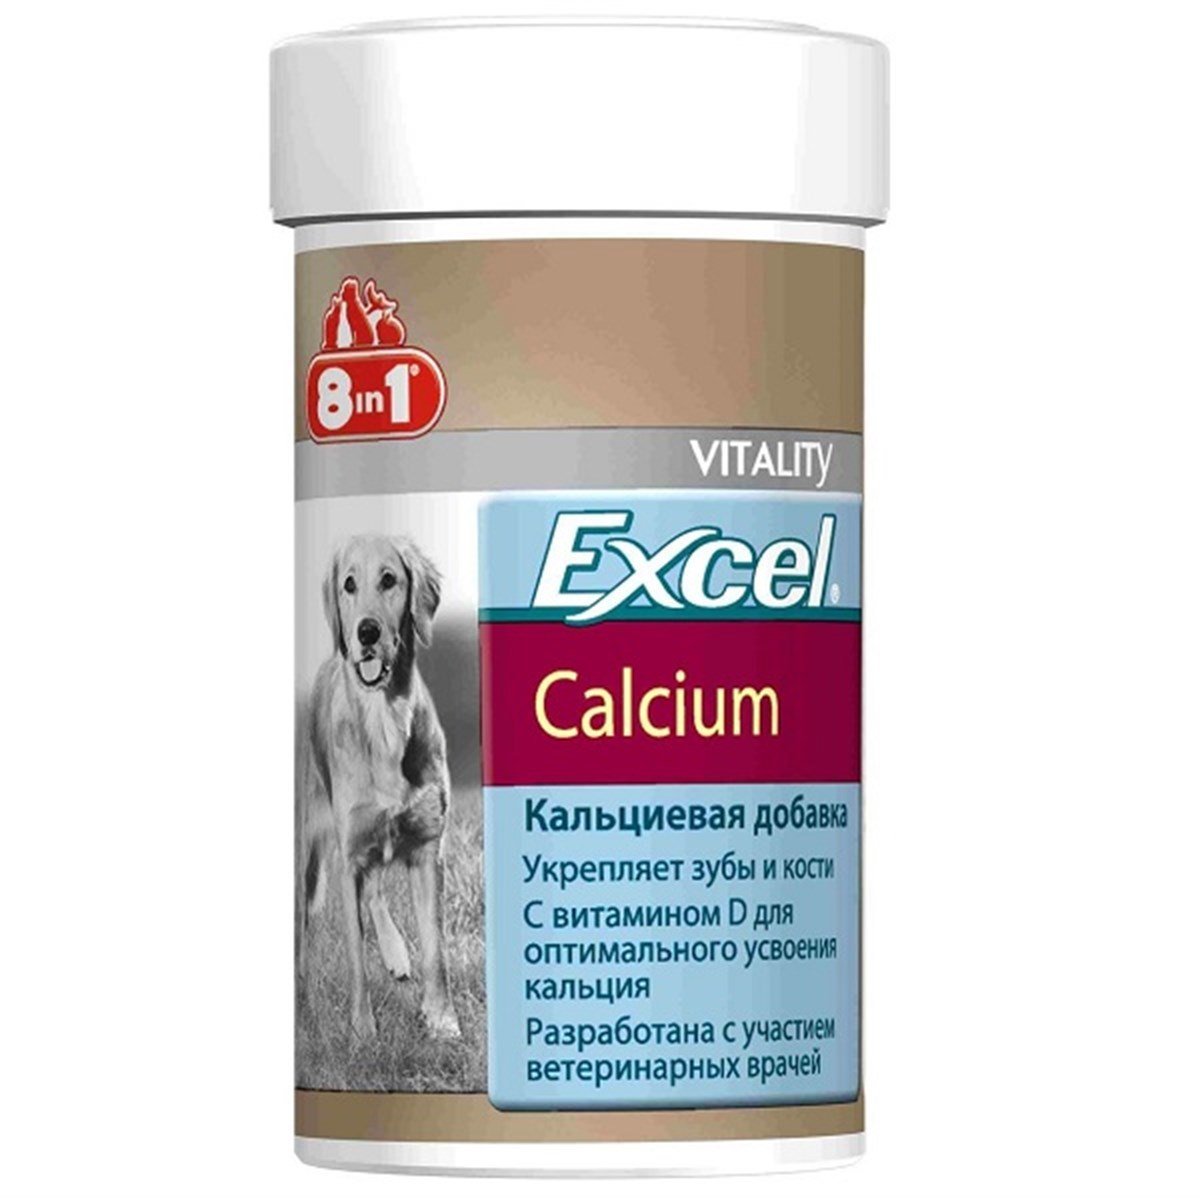 8in1 Excel Calcium Köpek Kalsiyum Tableti 70 Tb